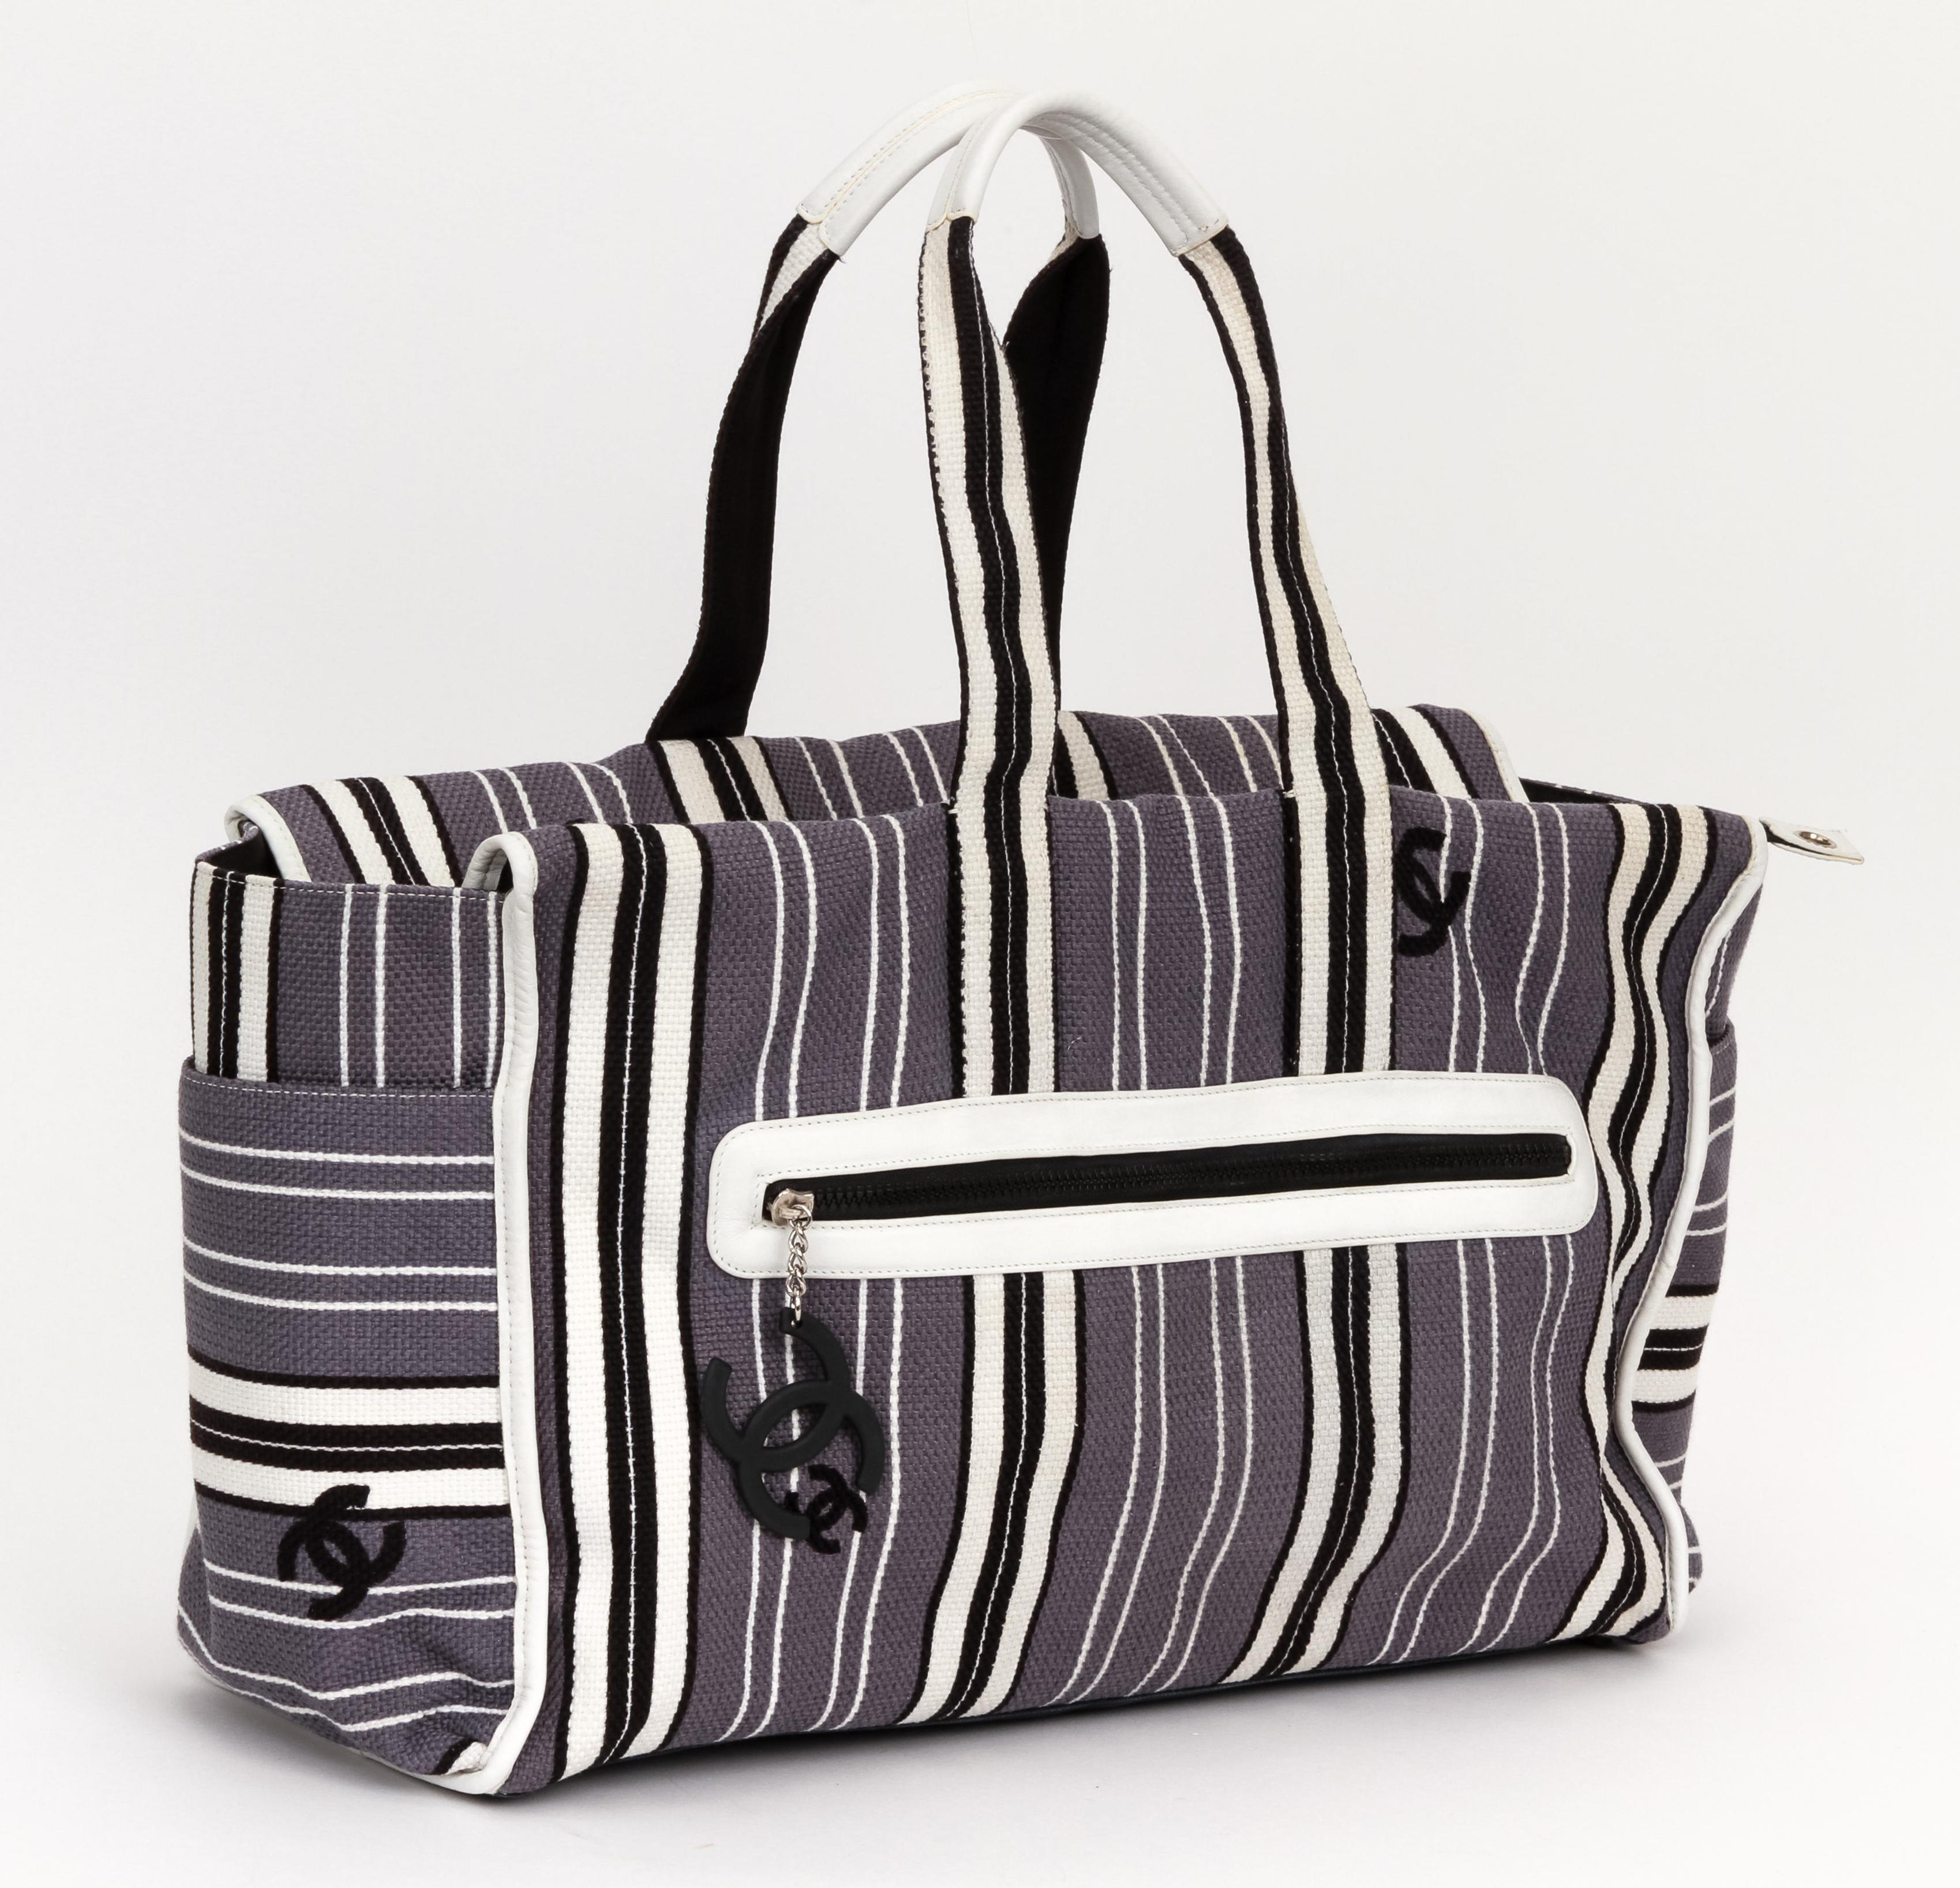 Gestreifte Strandtasche in Übergröße von Chanel in Grau, Weiß und Schwarz. Außentasche mit Reißverschluss und Innentasche mit Reißverschluss. Neuwertiger Zustand, Schulterhöhe 10